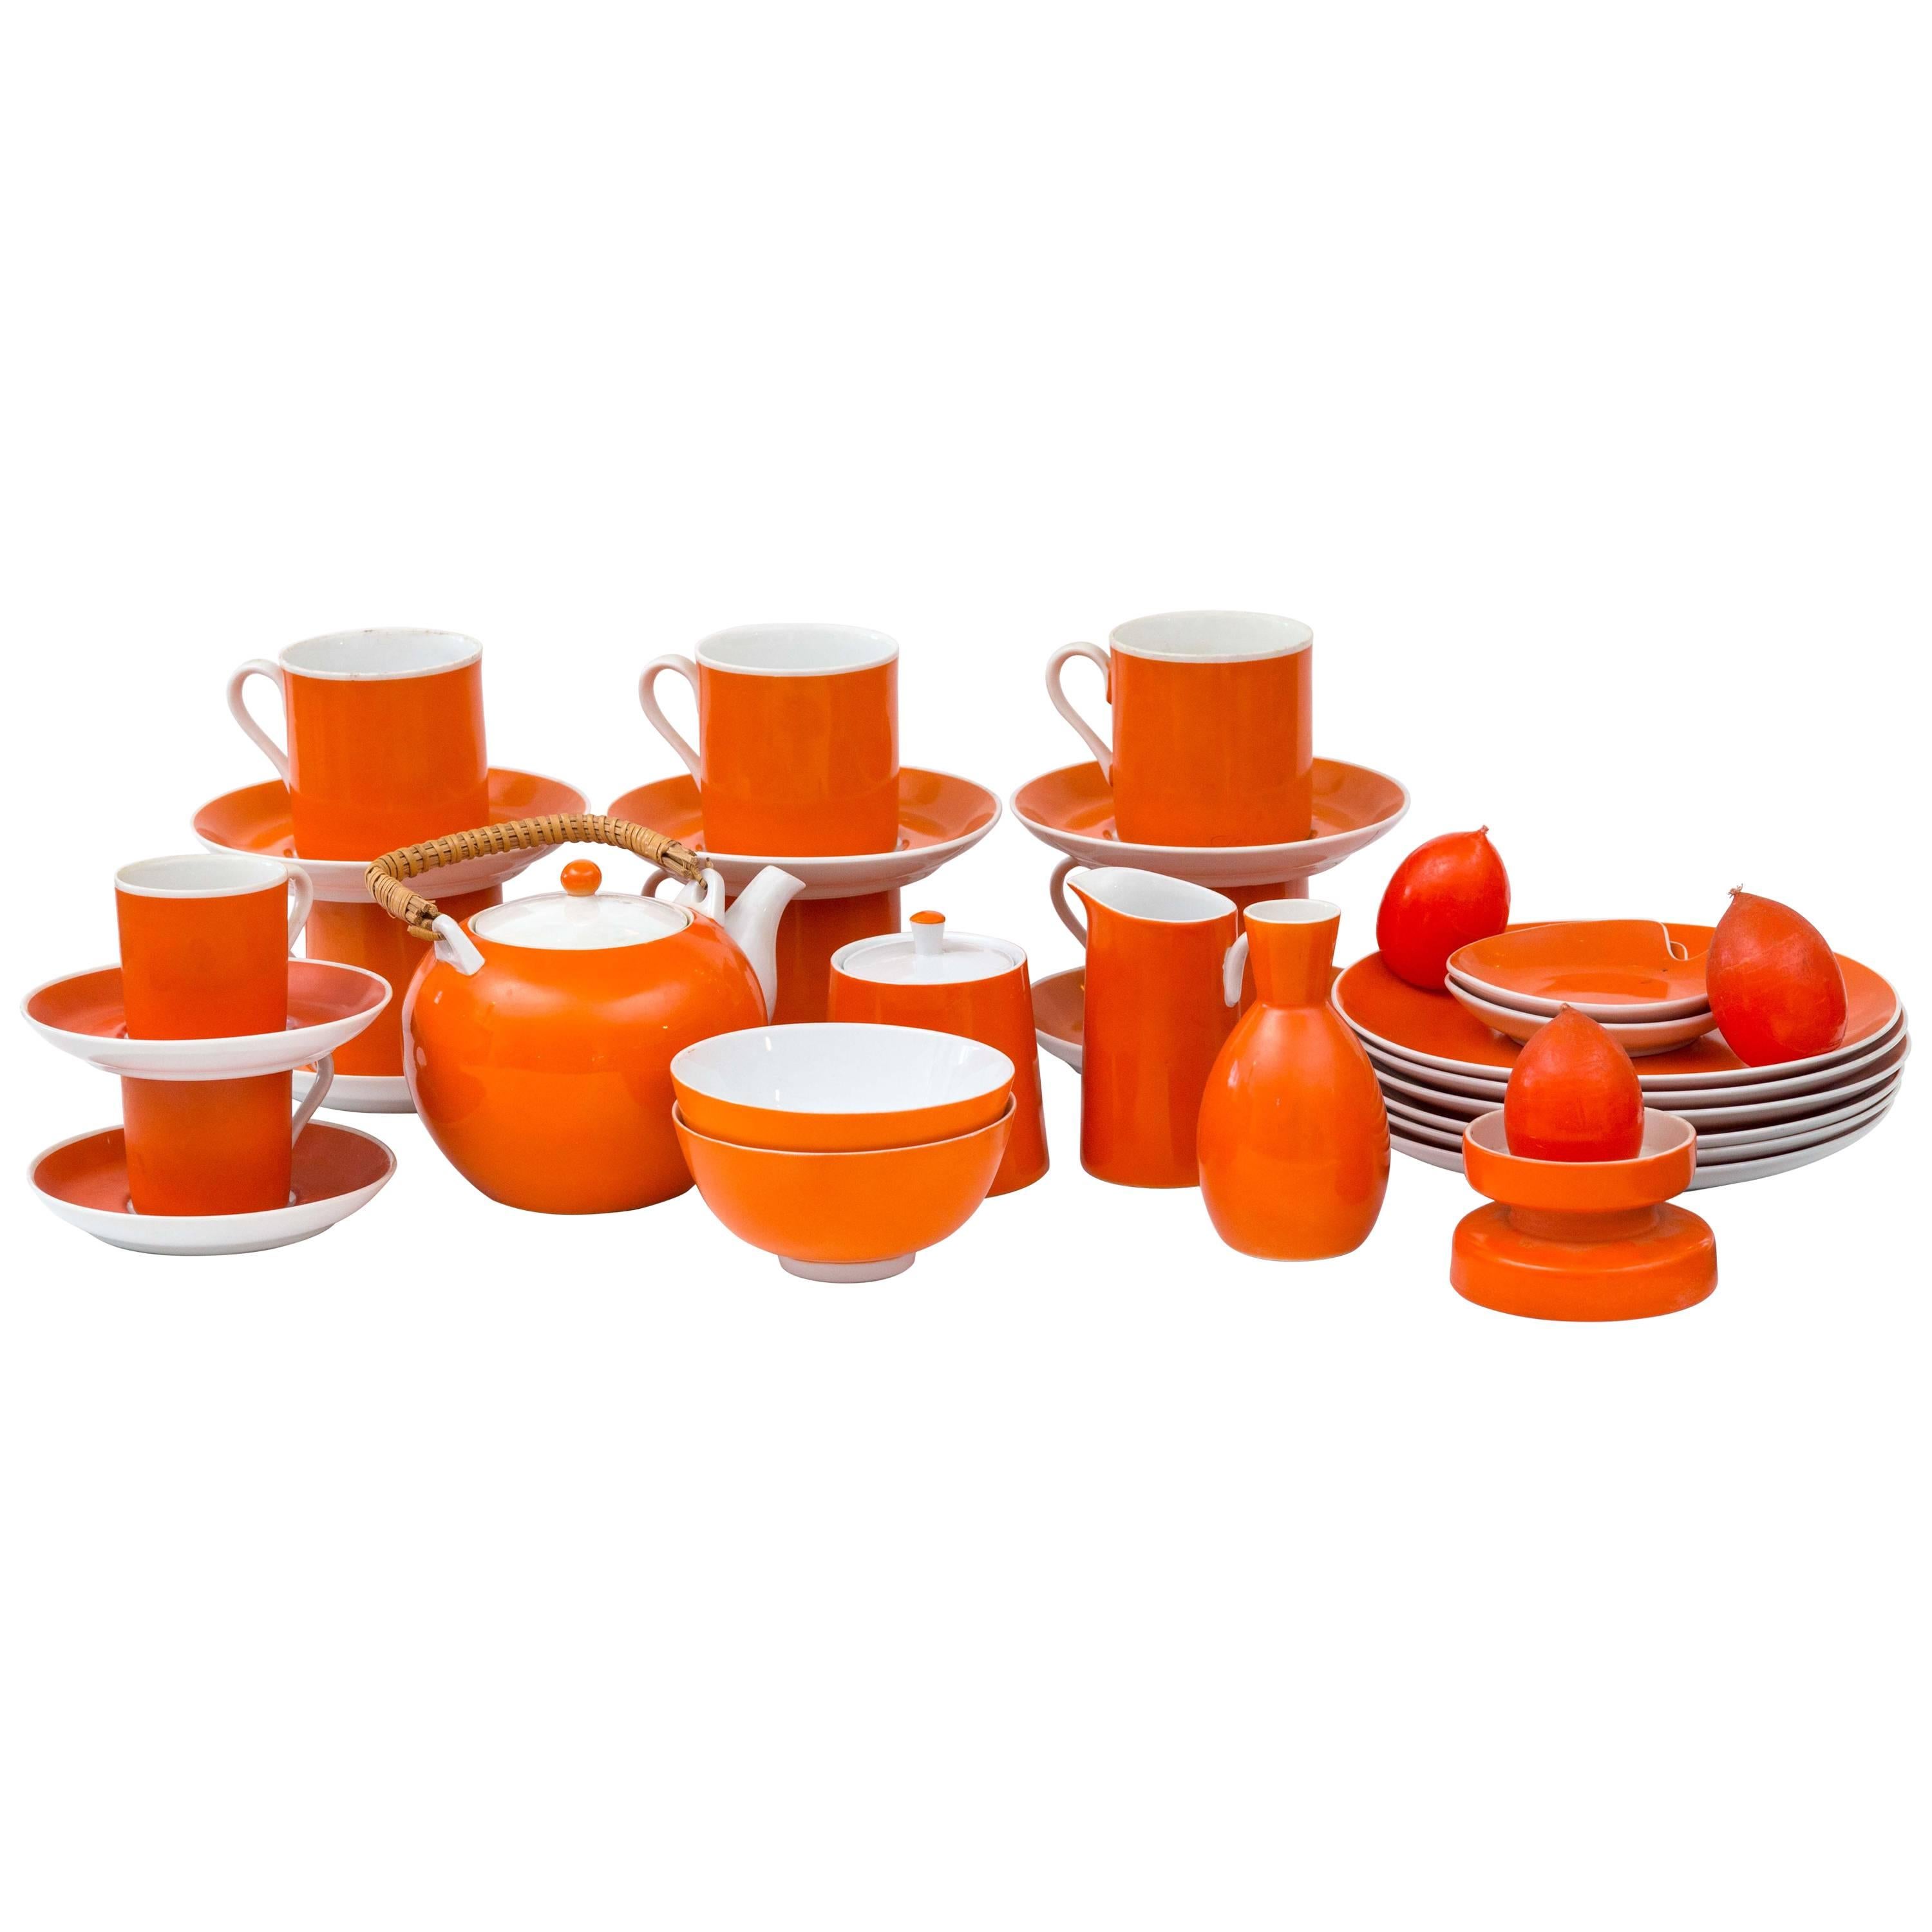 31 Piece Vintage Porcelain Tangerine Orange Dessert Set